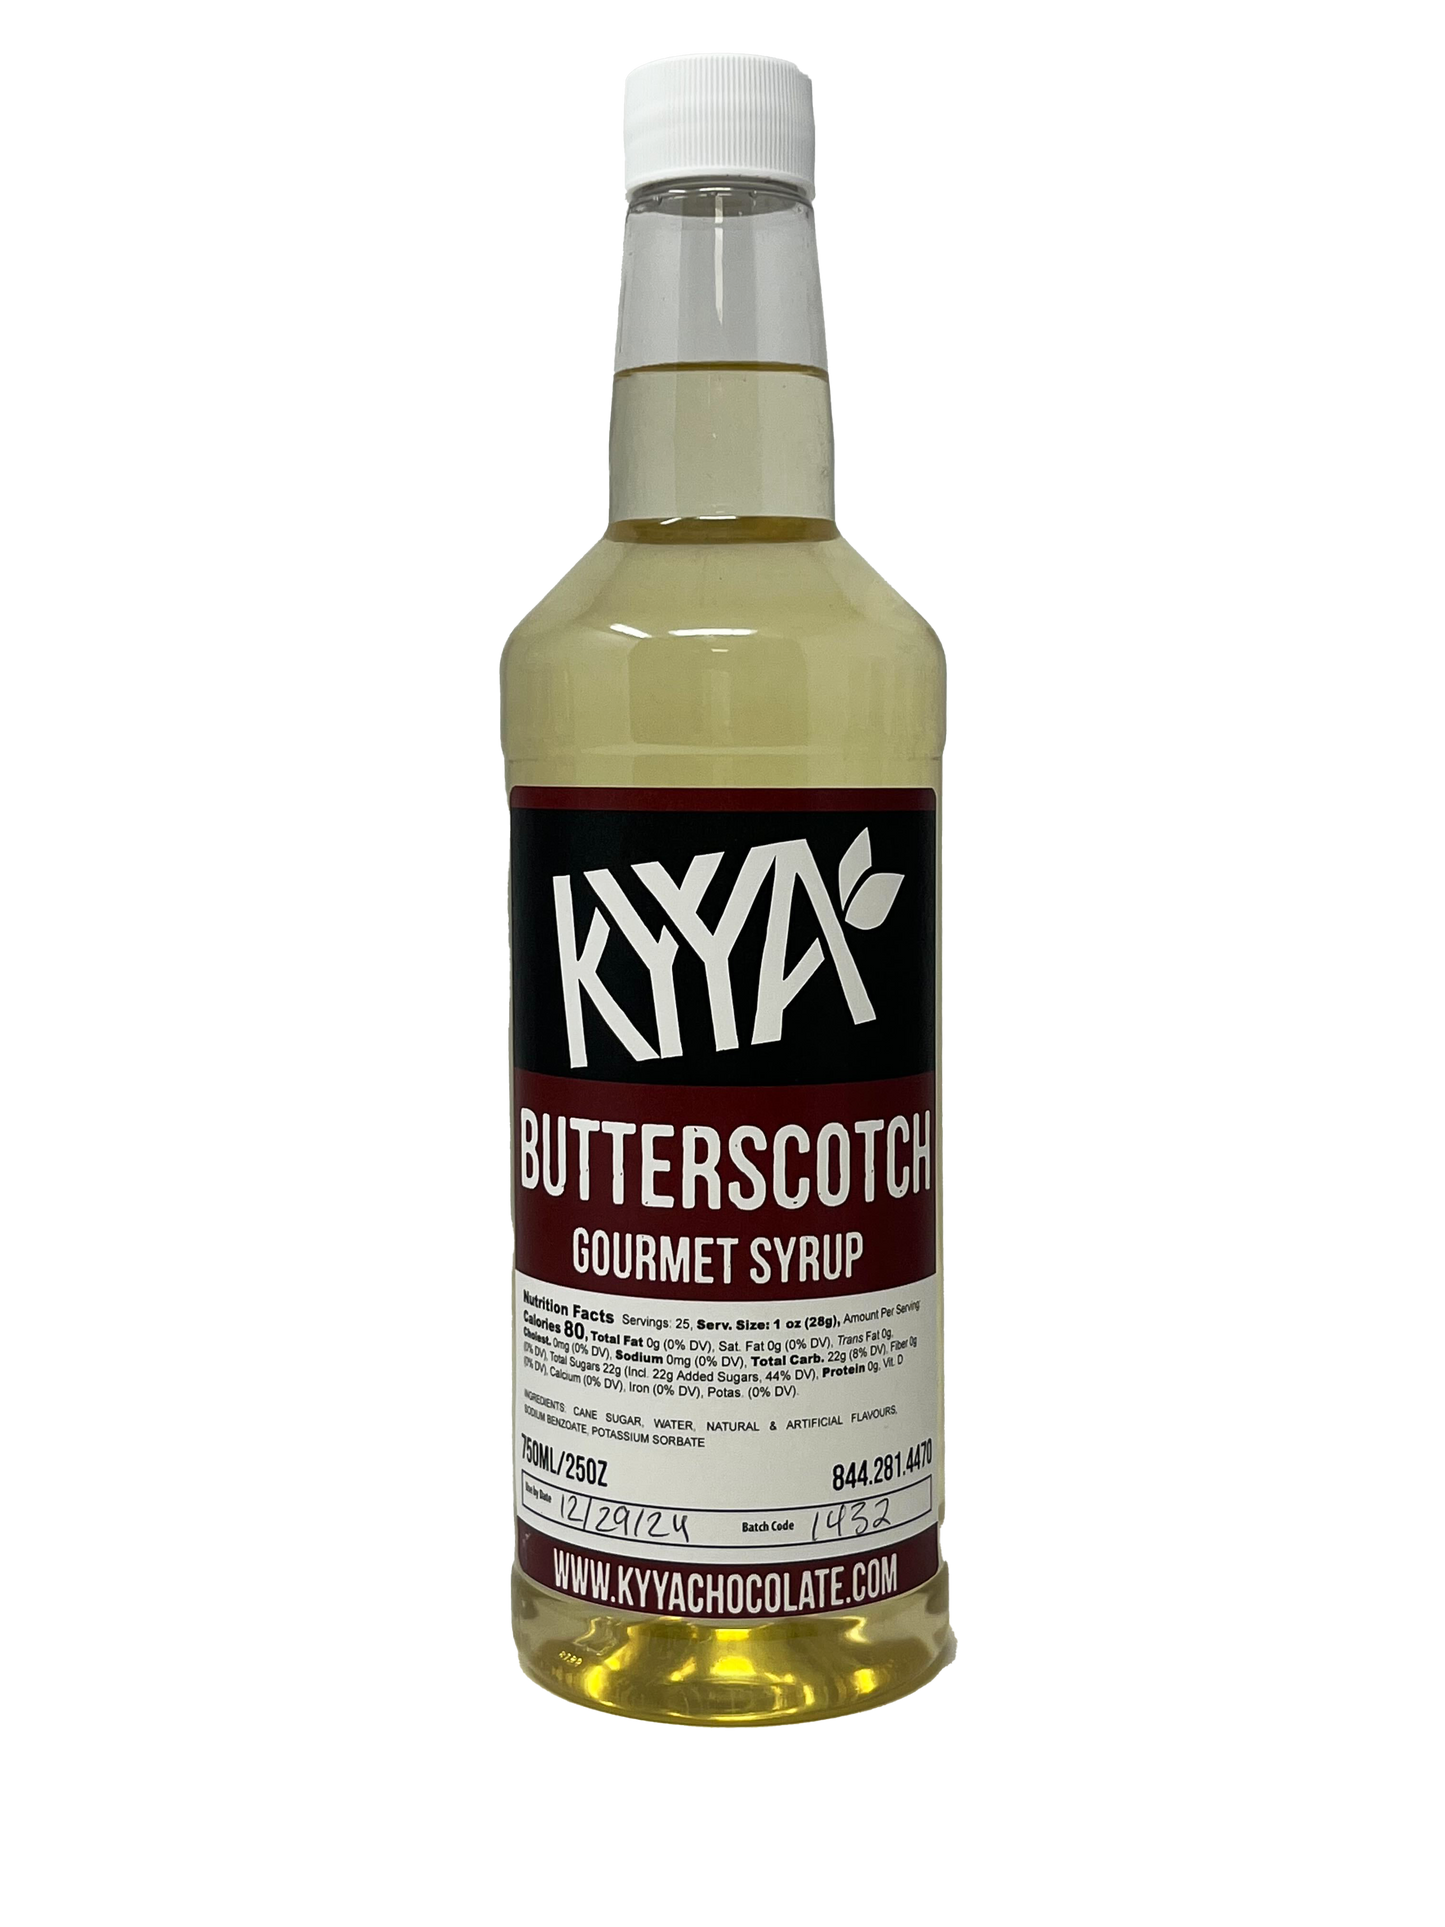 Butterscotch Gourmet Syrup